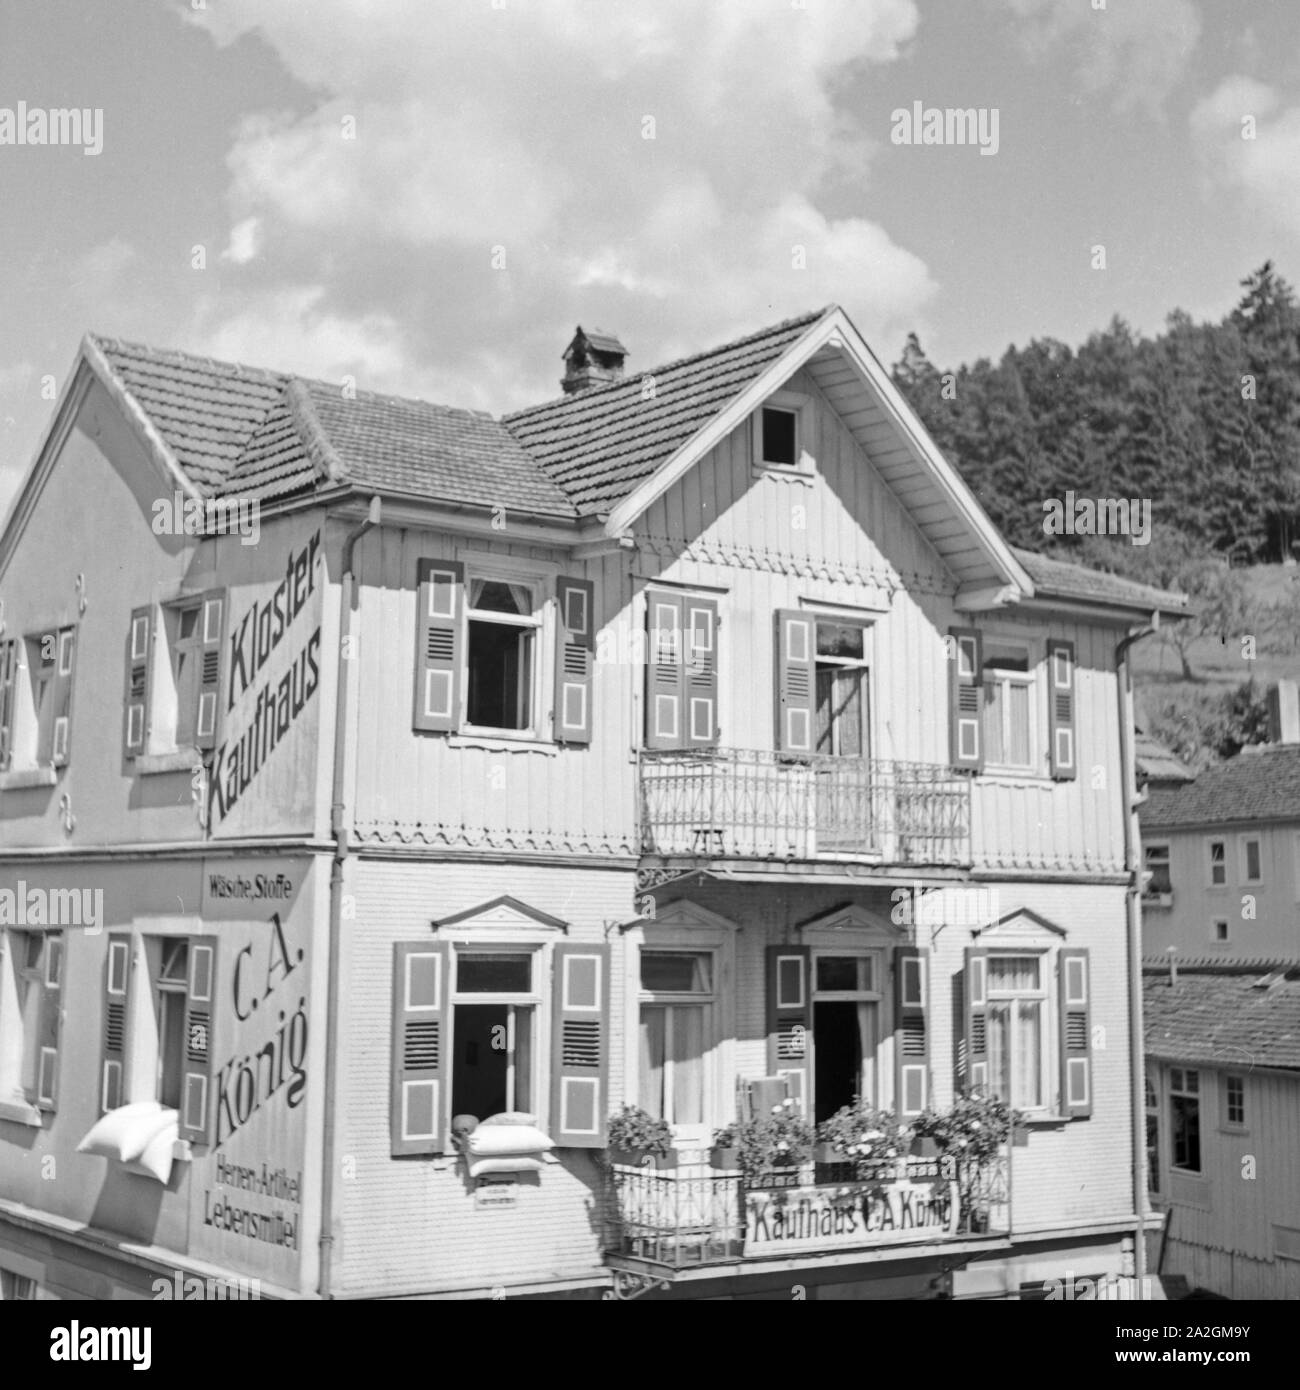 Kloster Kaufhaus in einem Kurort im Schwarzwald, Deutschland 1930er Jahre. Little department store at a spa resort in the Black Forest area, Germany 1930s. Stock Photo